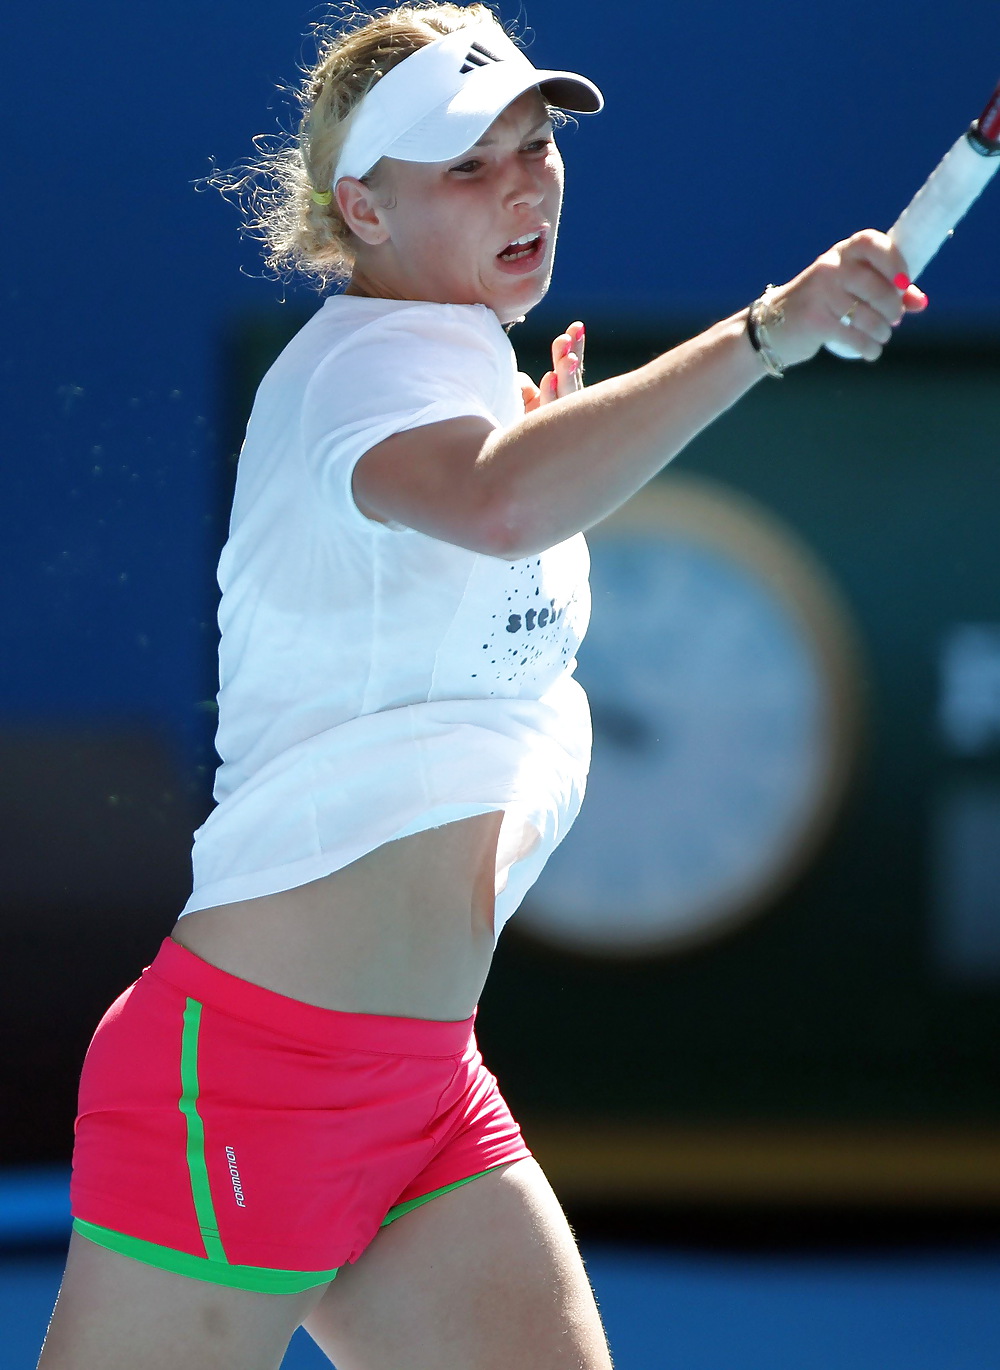 Caro Wozniacki - Most fuckable tennis player